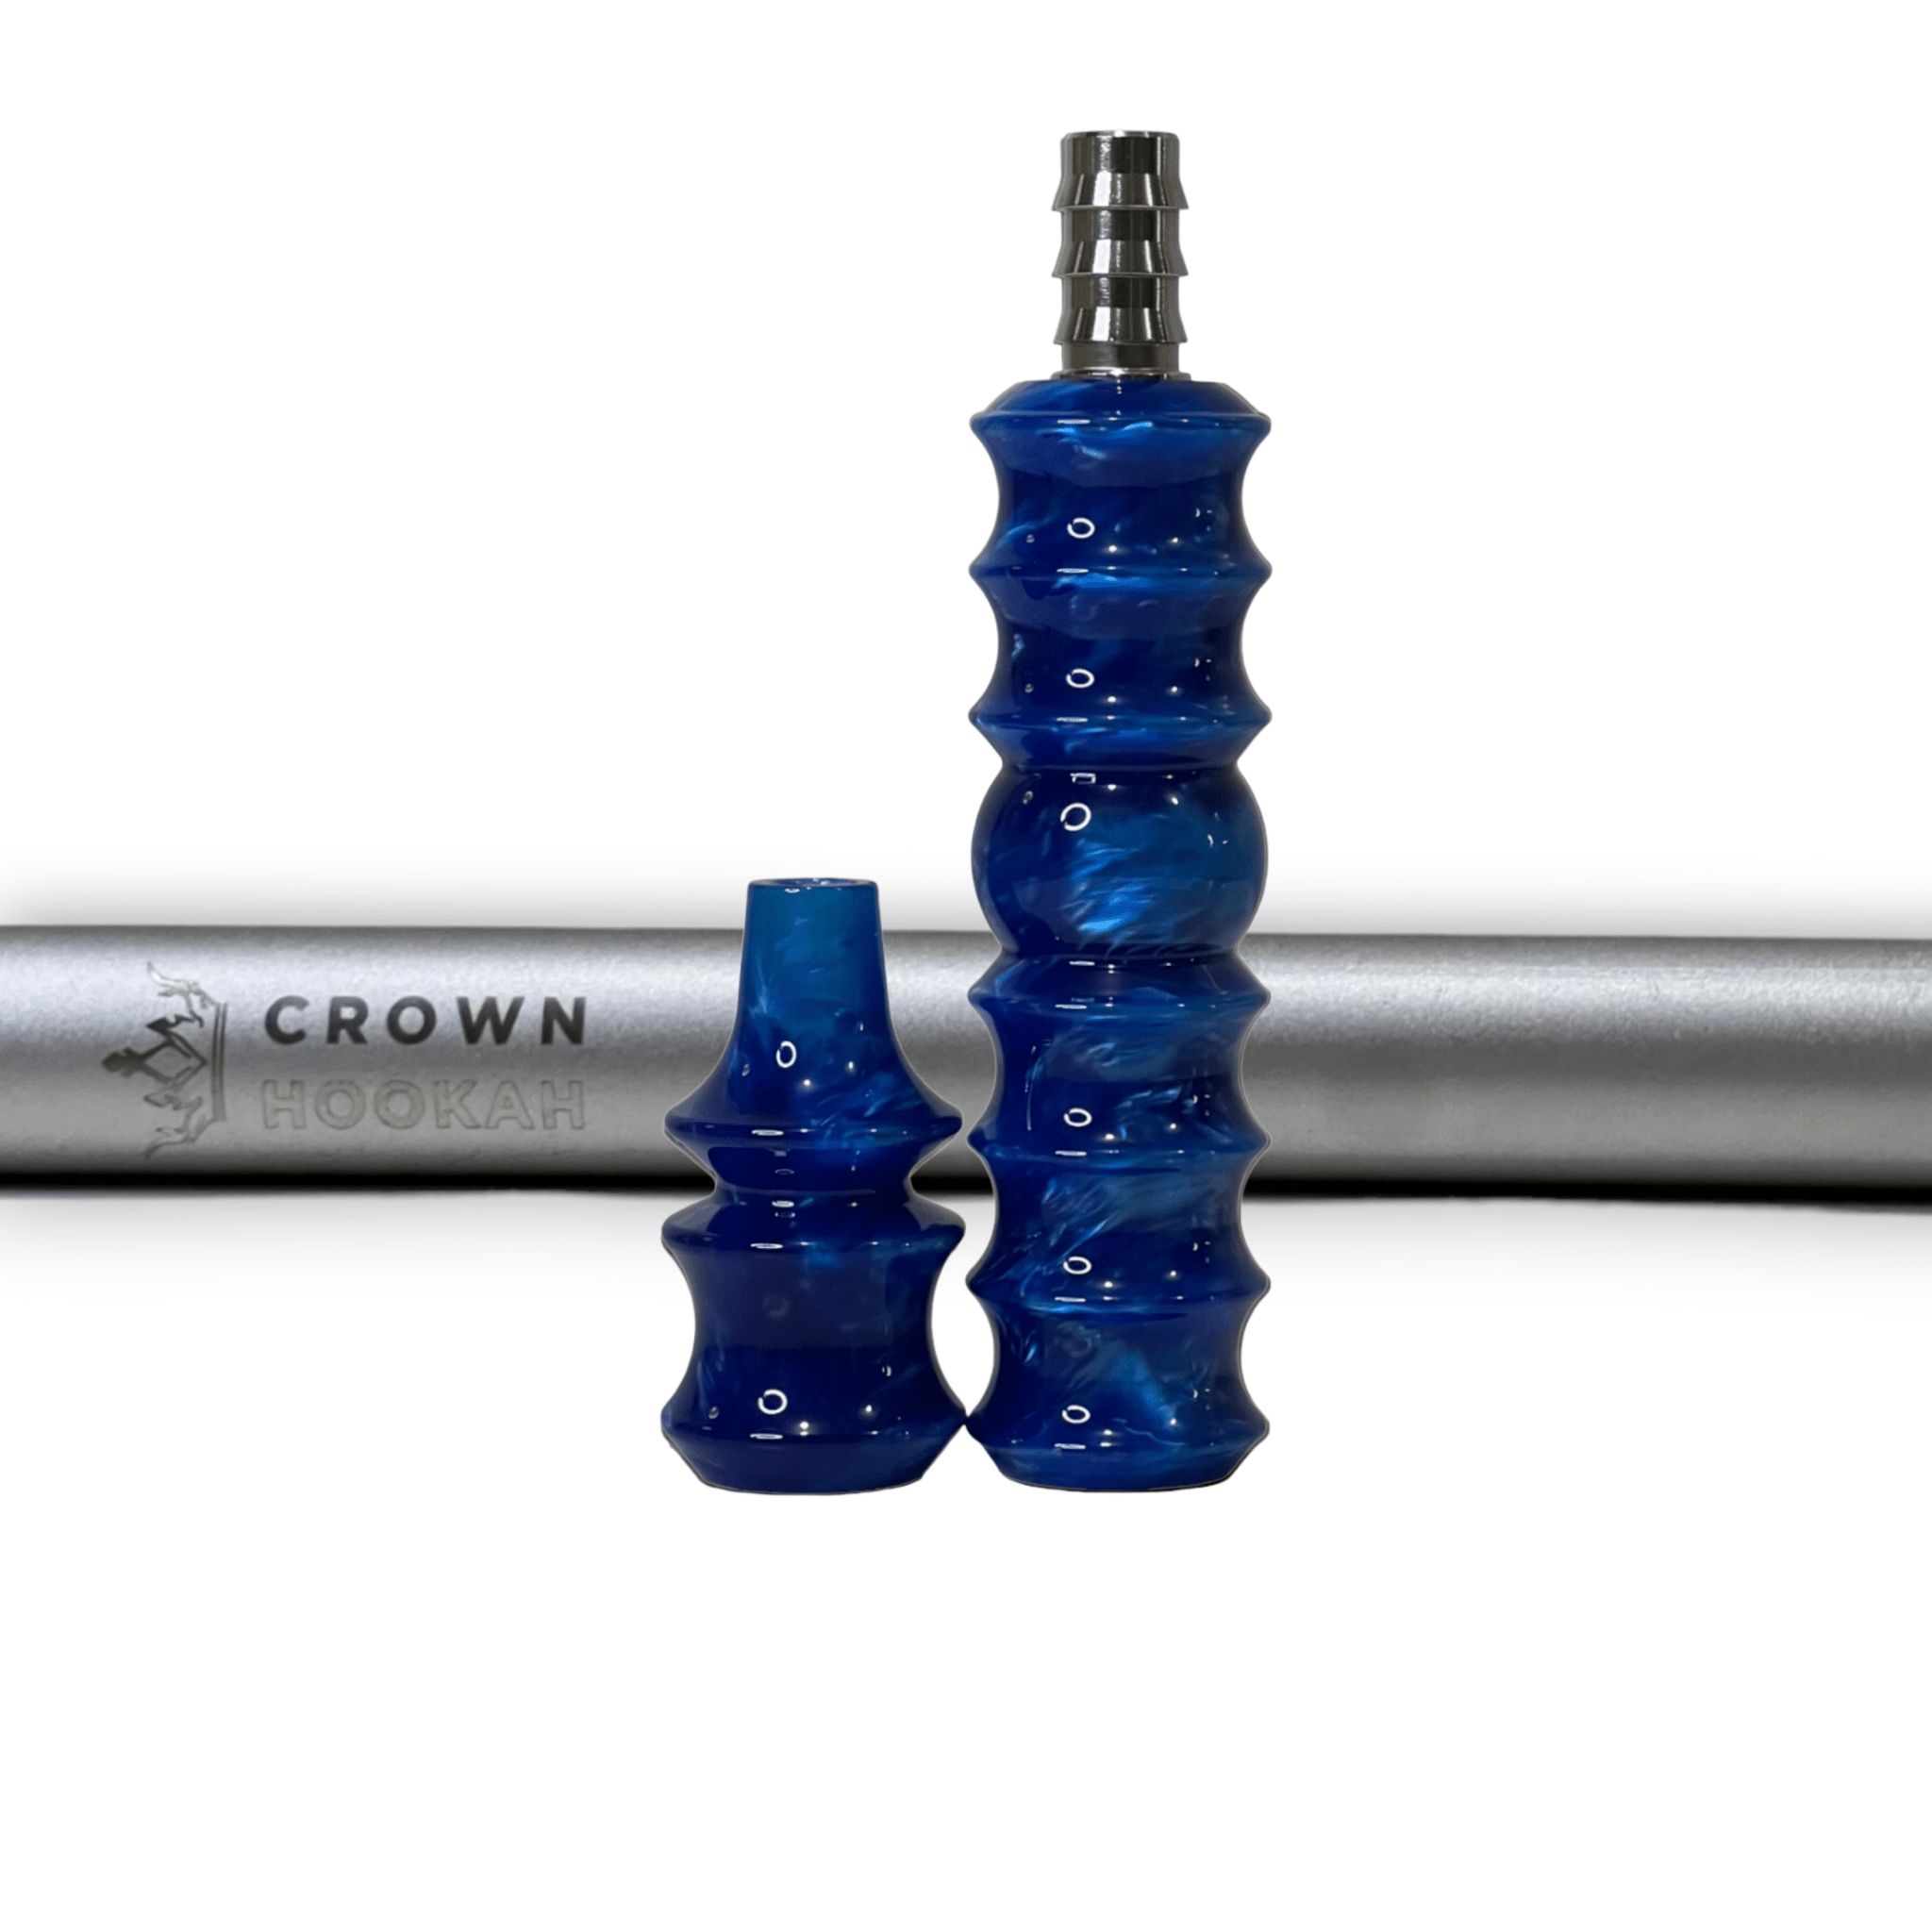 CH Premium Mouthpiece Complete Set - Ocean Blue - Matte Silver - Crown Hookah